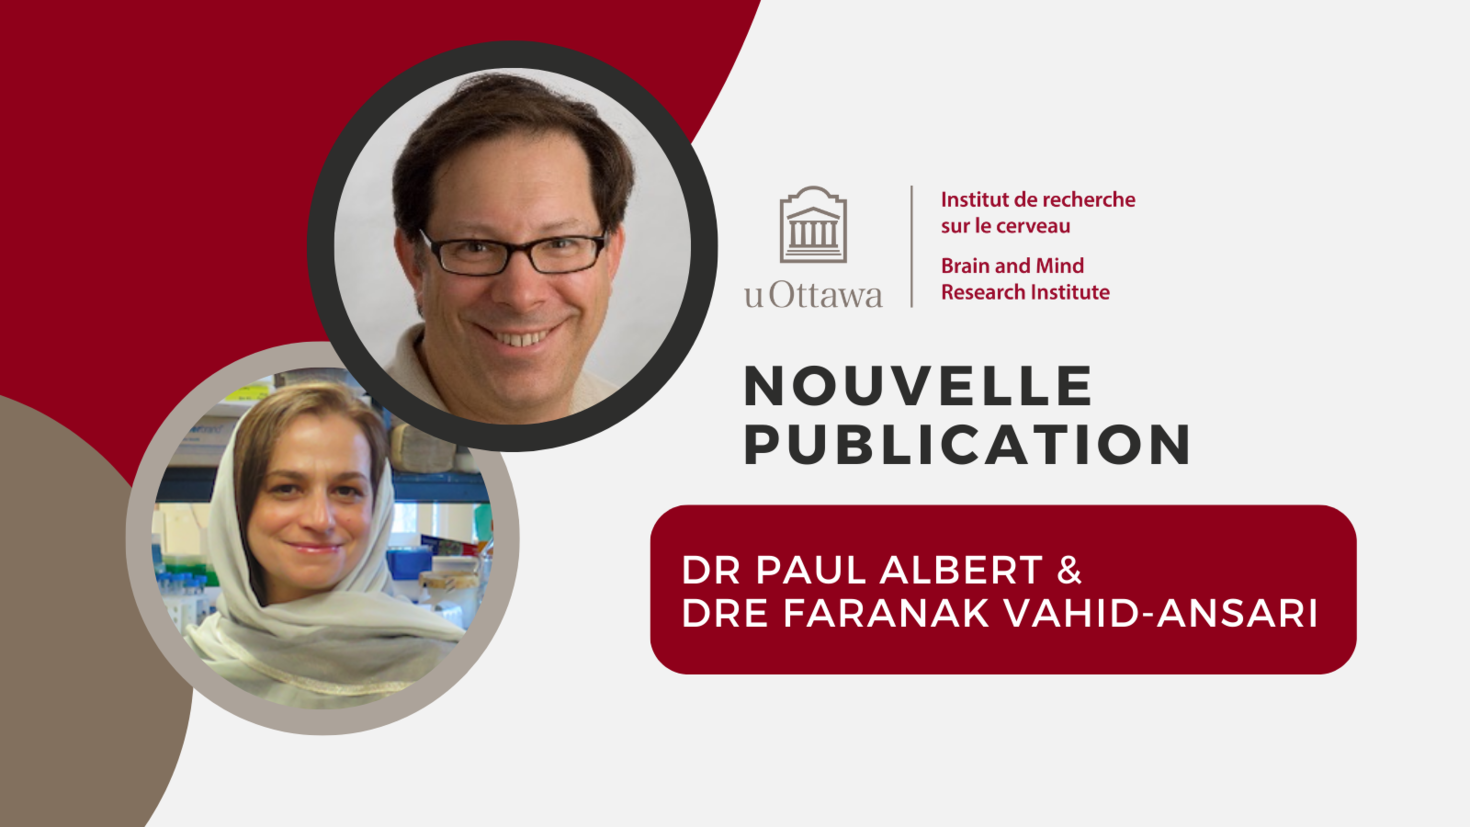 Logo de l’IRCuO dans le haut de la page avec deux encadrés ronds, dans lesquels on retrouve les photos du Dr Albert et du Dr Faranak. On peut aussi lire le texte « Nouvelle publication, Dr Paul Albert et Dr Faranak Vahid-Ansari ».